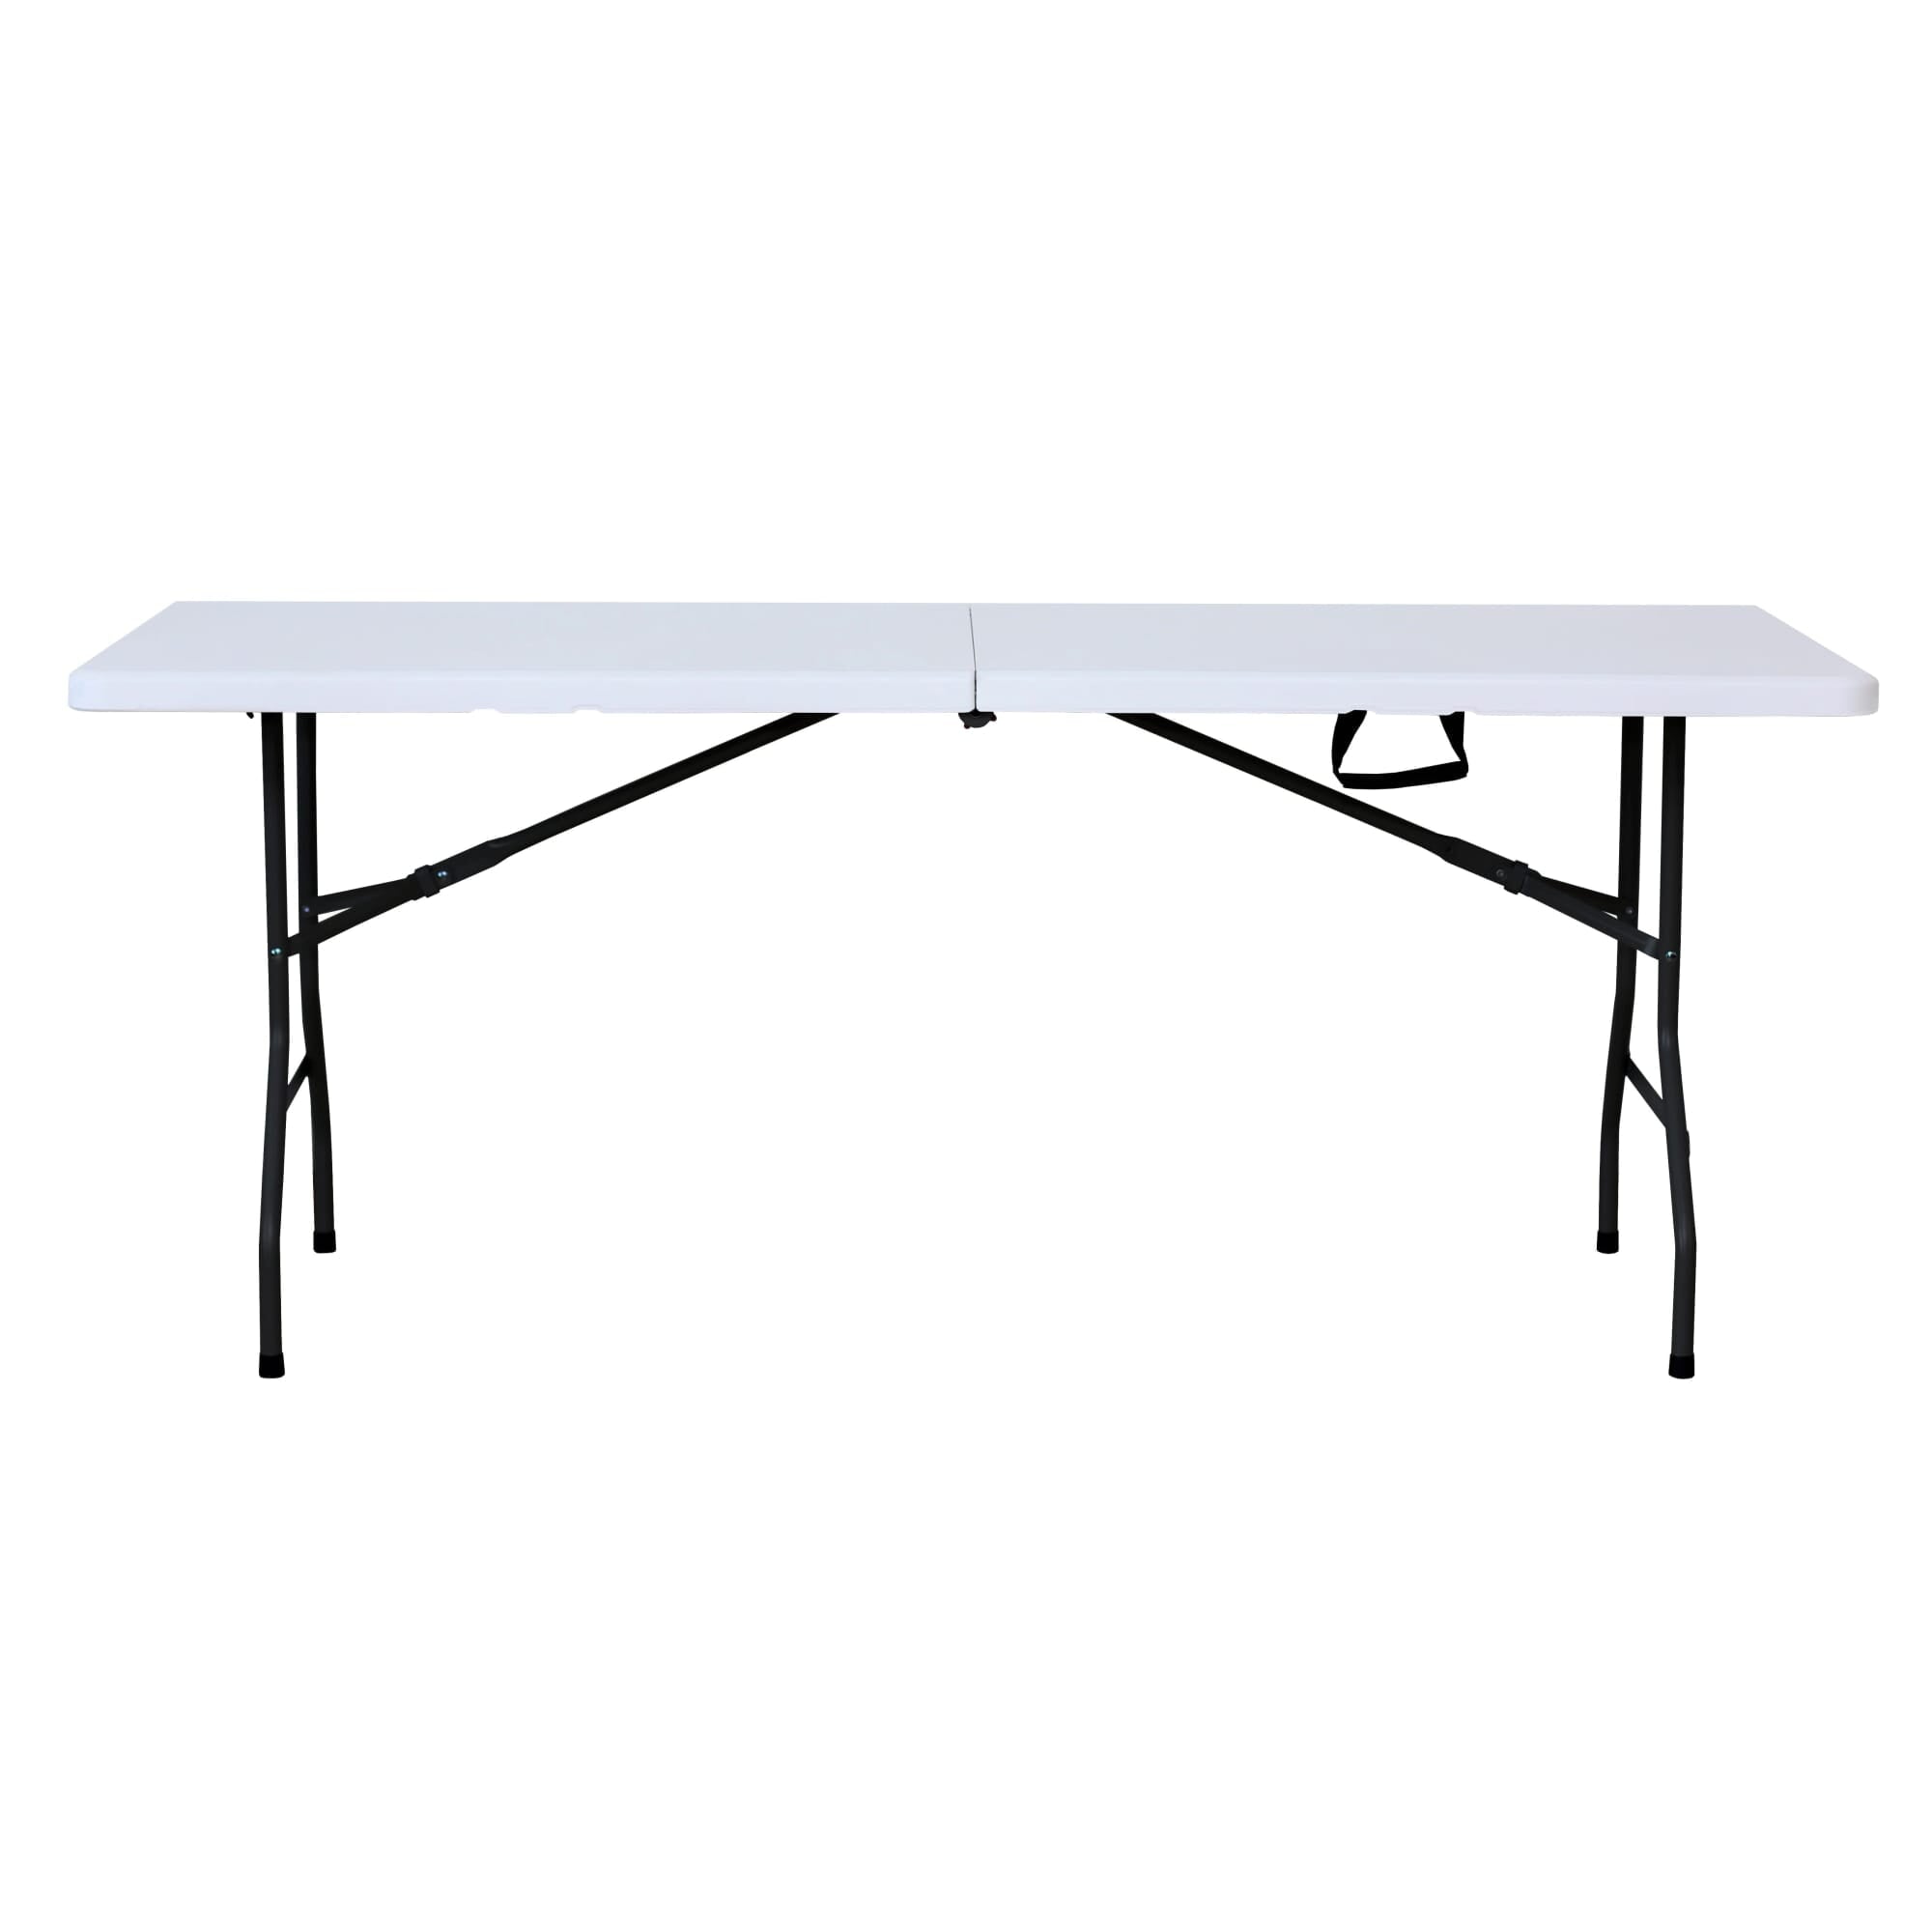 Garbar easrechthoekige opvouwbare tafel 243x76 wit